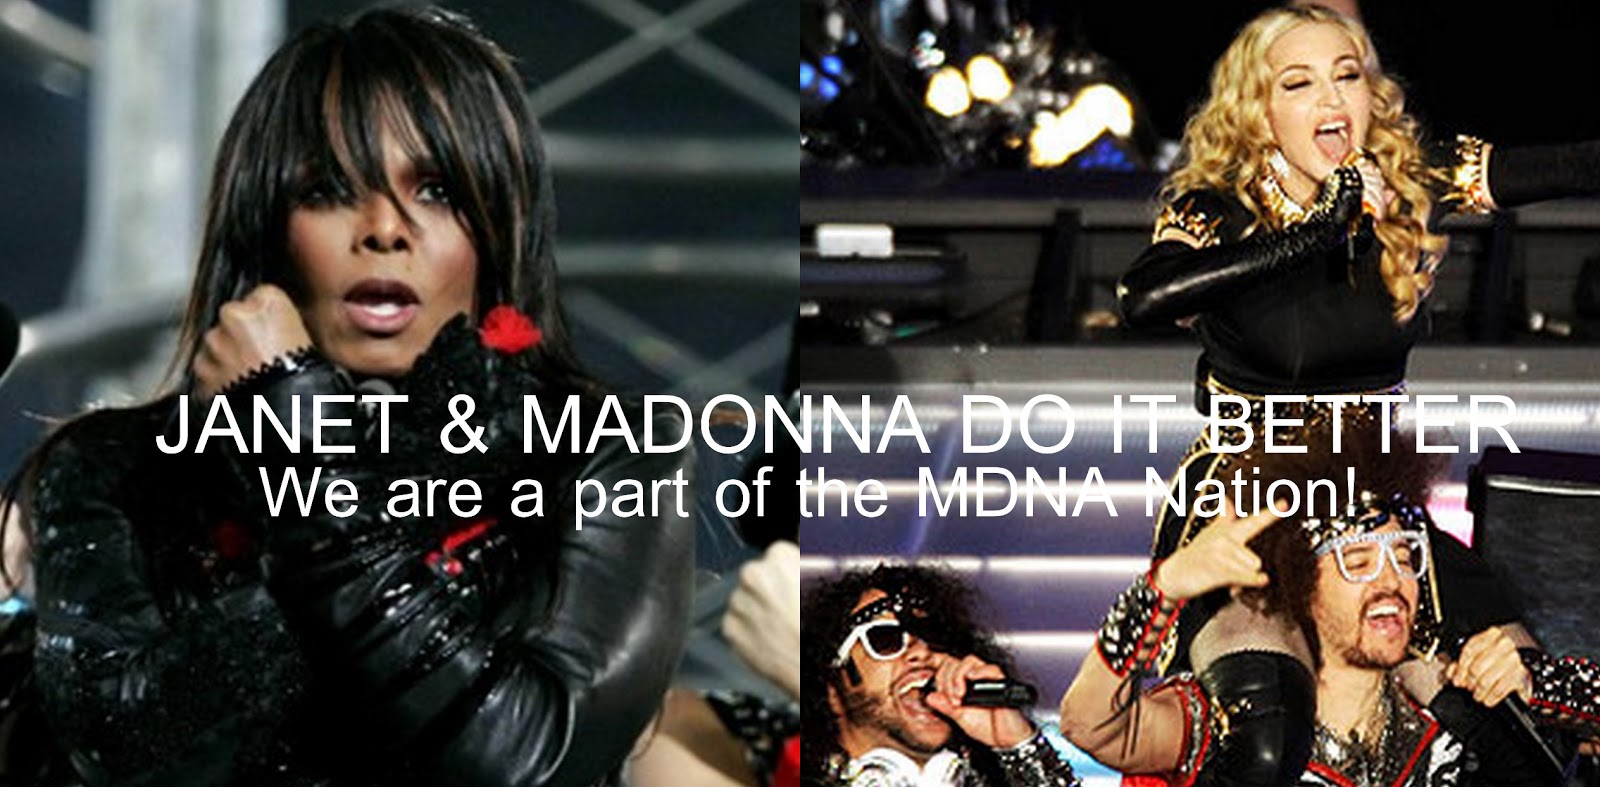 http://4.bp.blogspot.com/-kaEtWfOyWt0/URIF7BdQSuI/AAAAAAAADiM/nNGcholp_yo/s1600/Madonna+201212.jpg